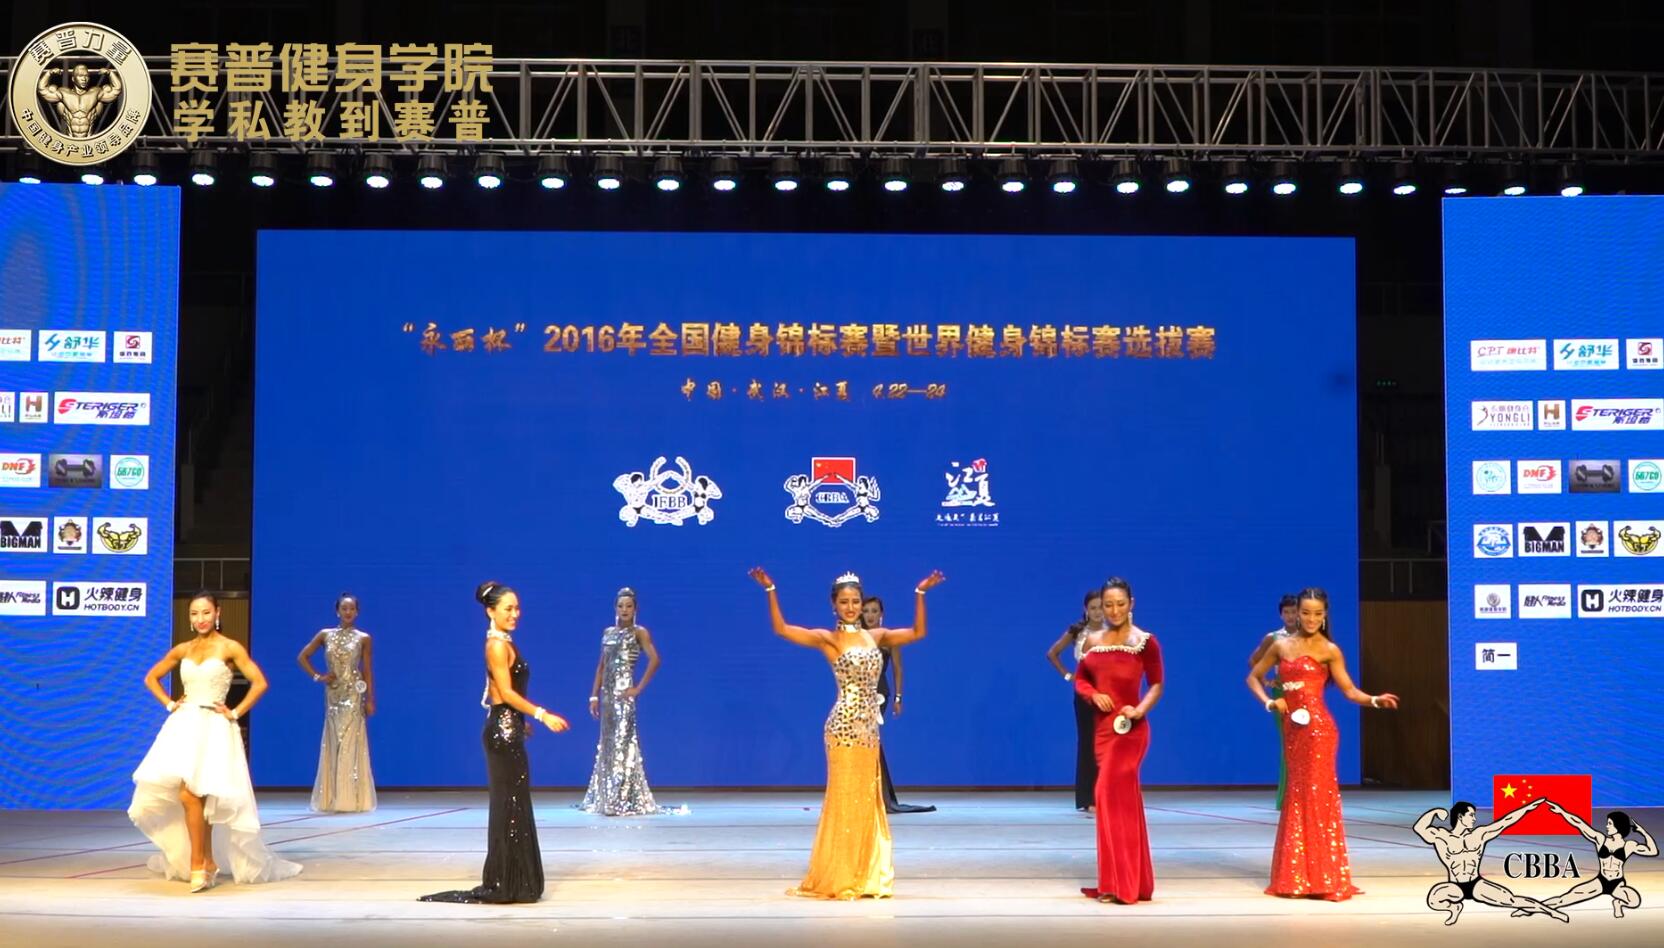 2016年全国健身锦标赛：健身小姐B组 决赛 晚装展示